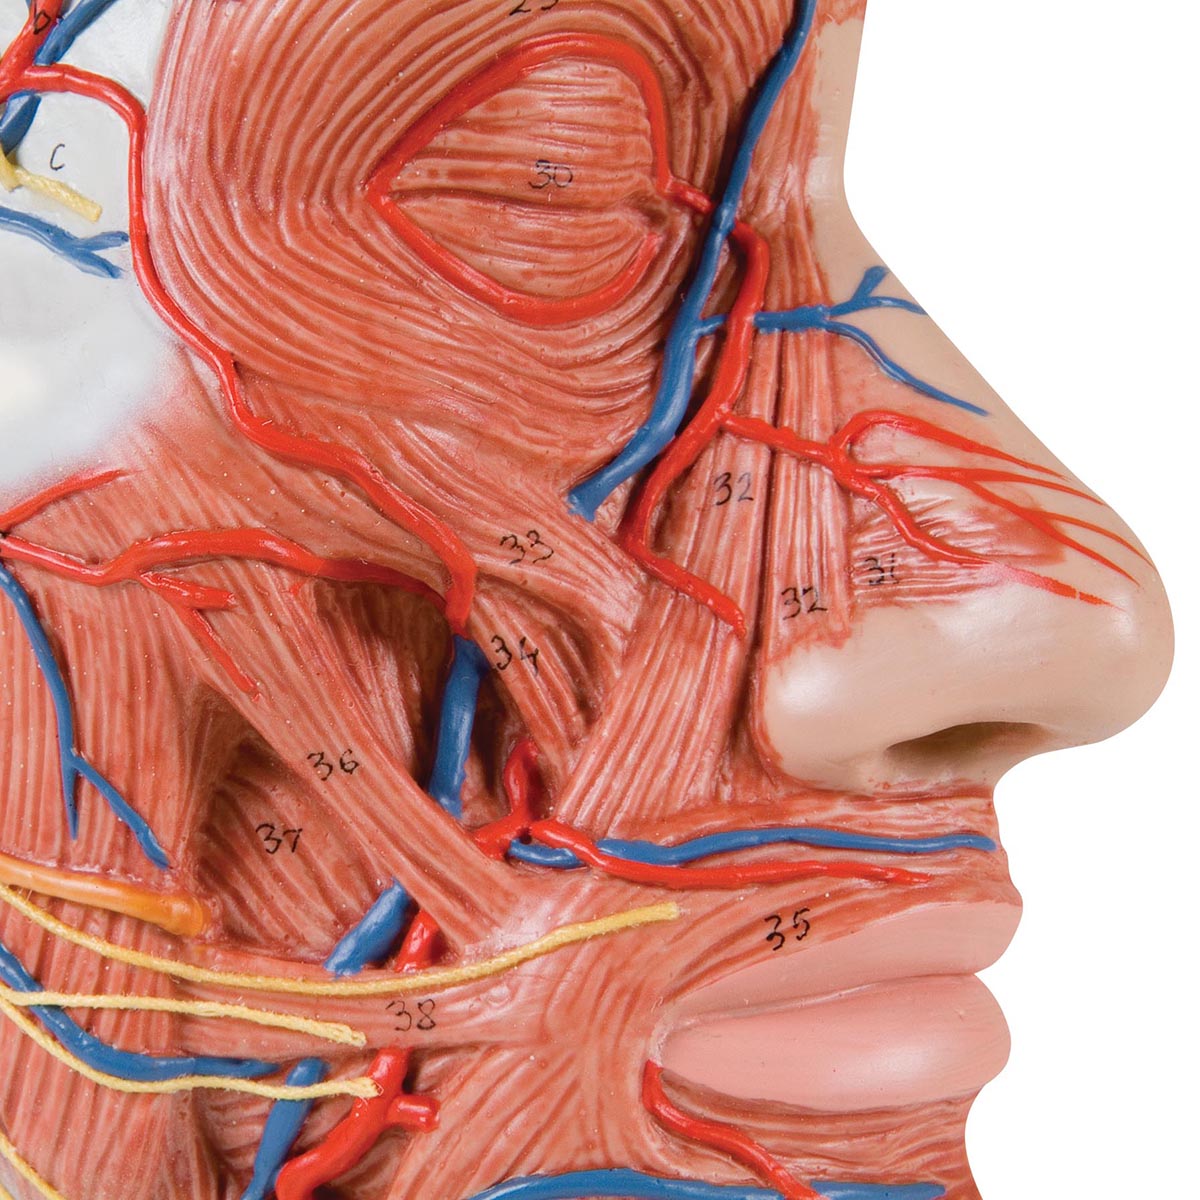 Komplet og detaljeret muskelmodel af hovedet og halsen som er halveret